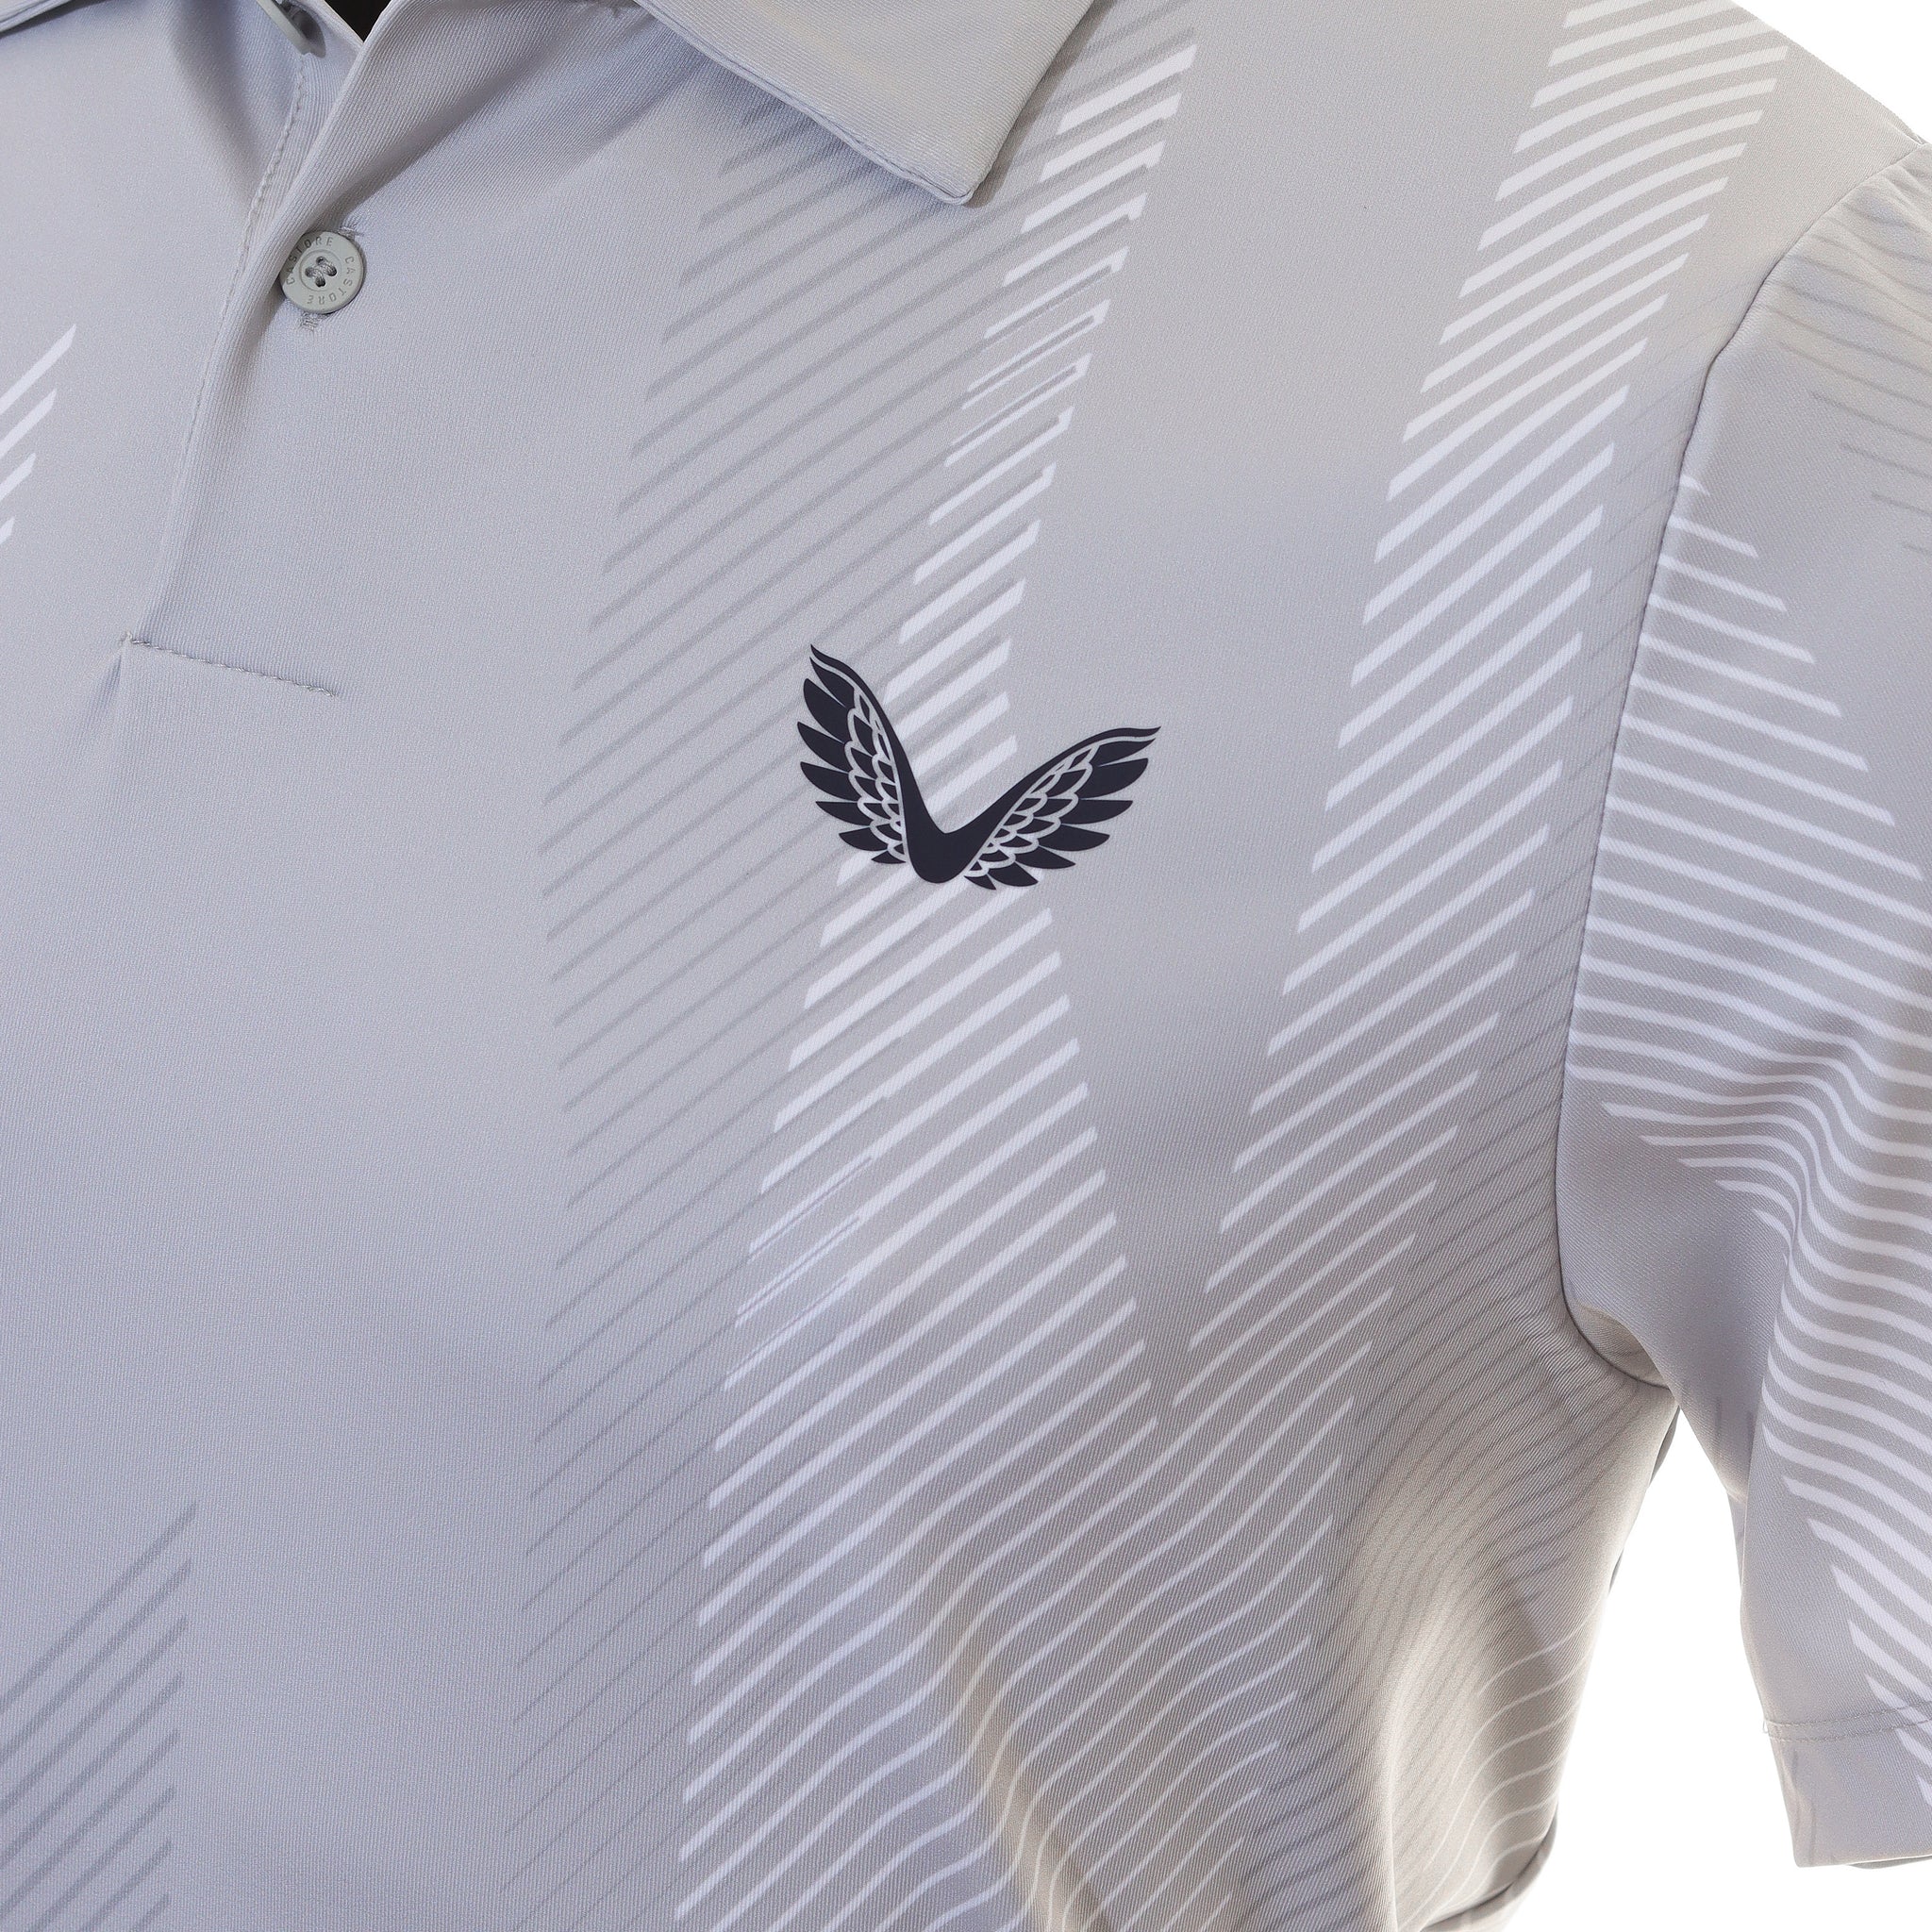 castore-printed-golf-polo-shirt-cma30362-stone-grey